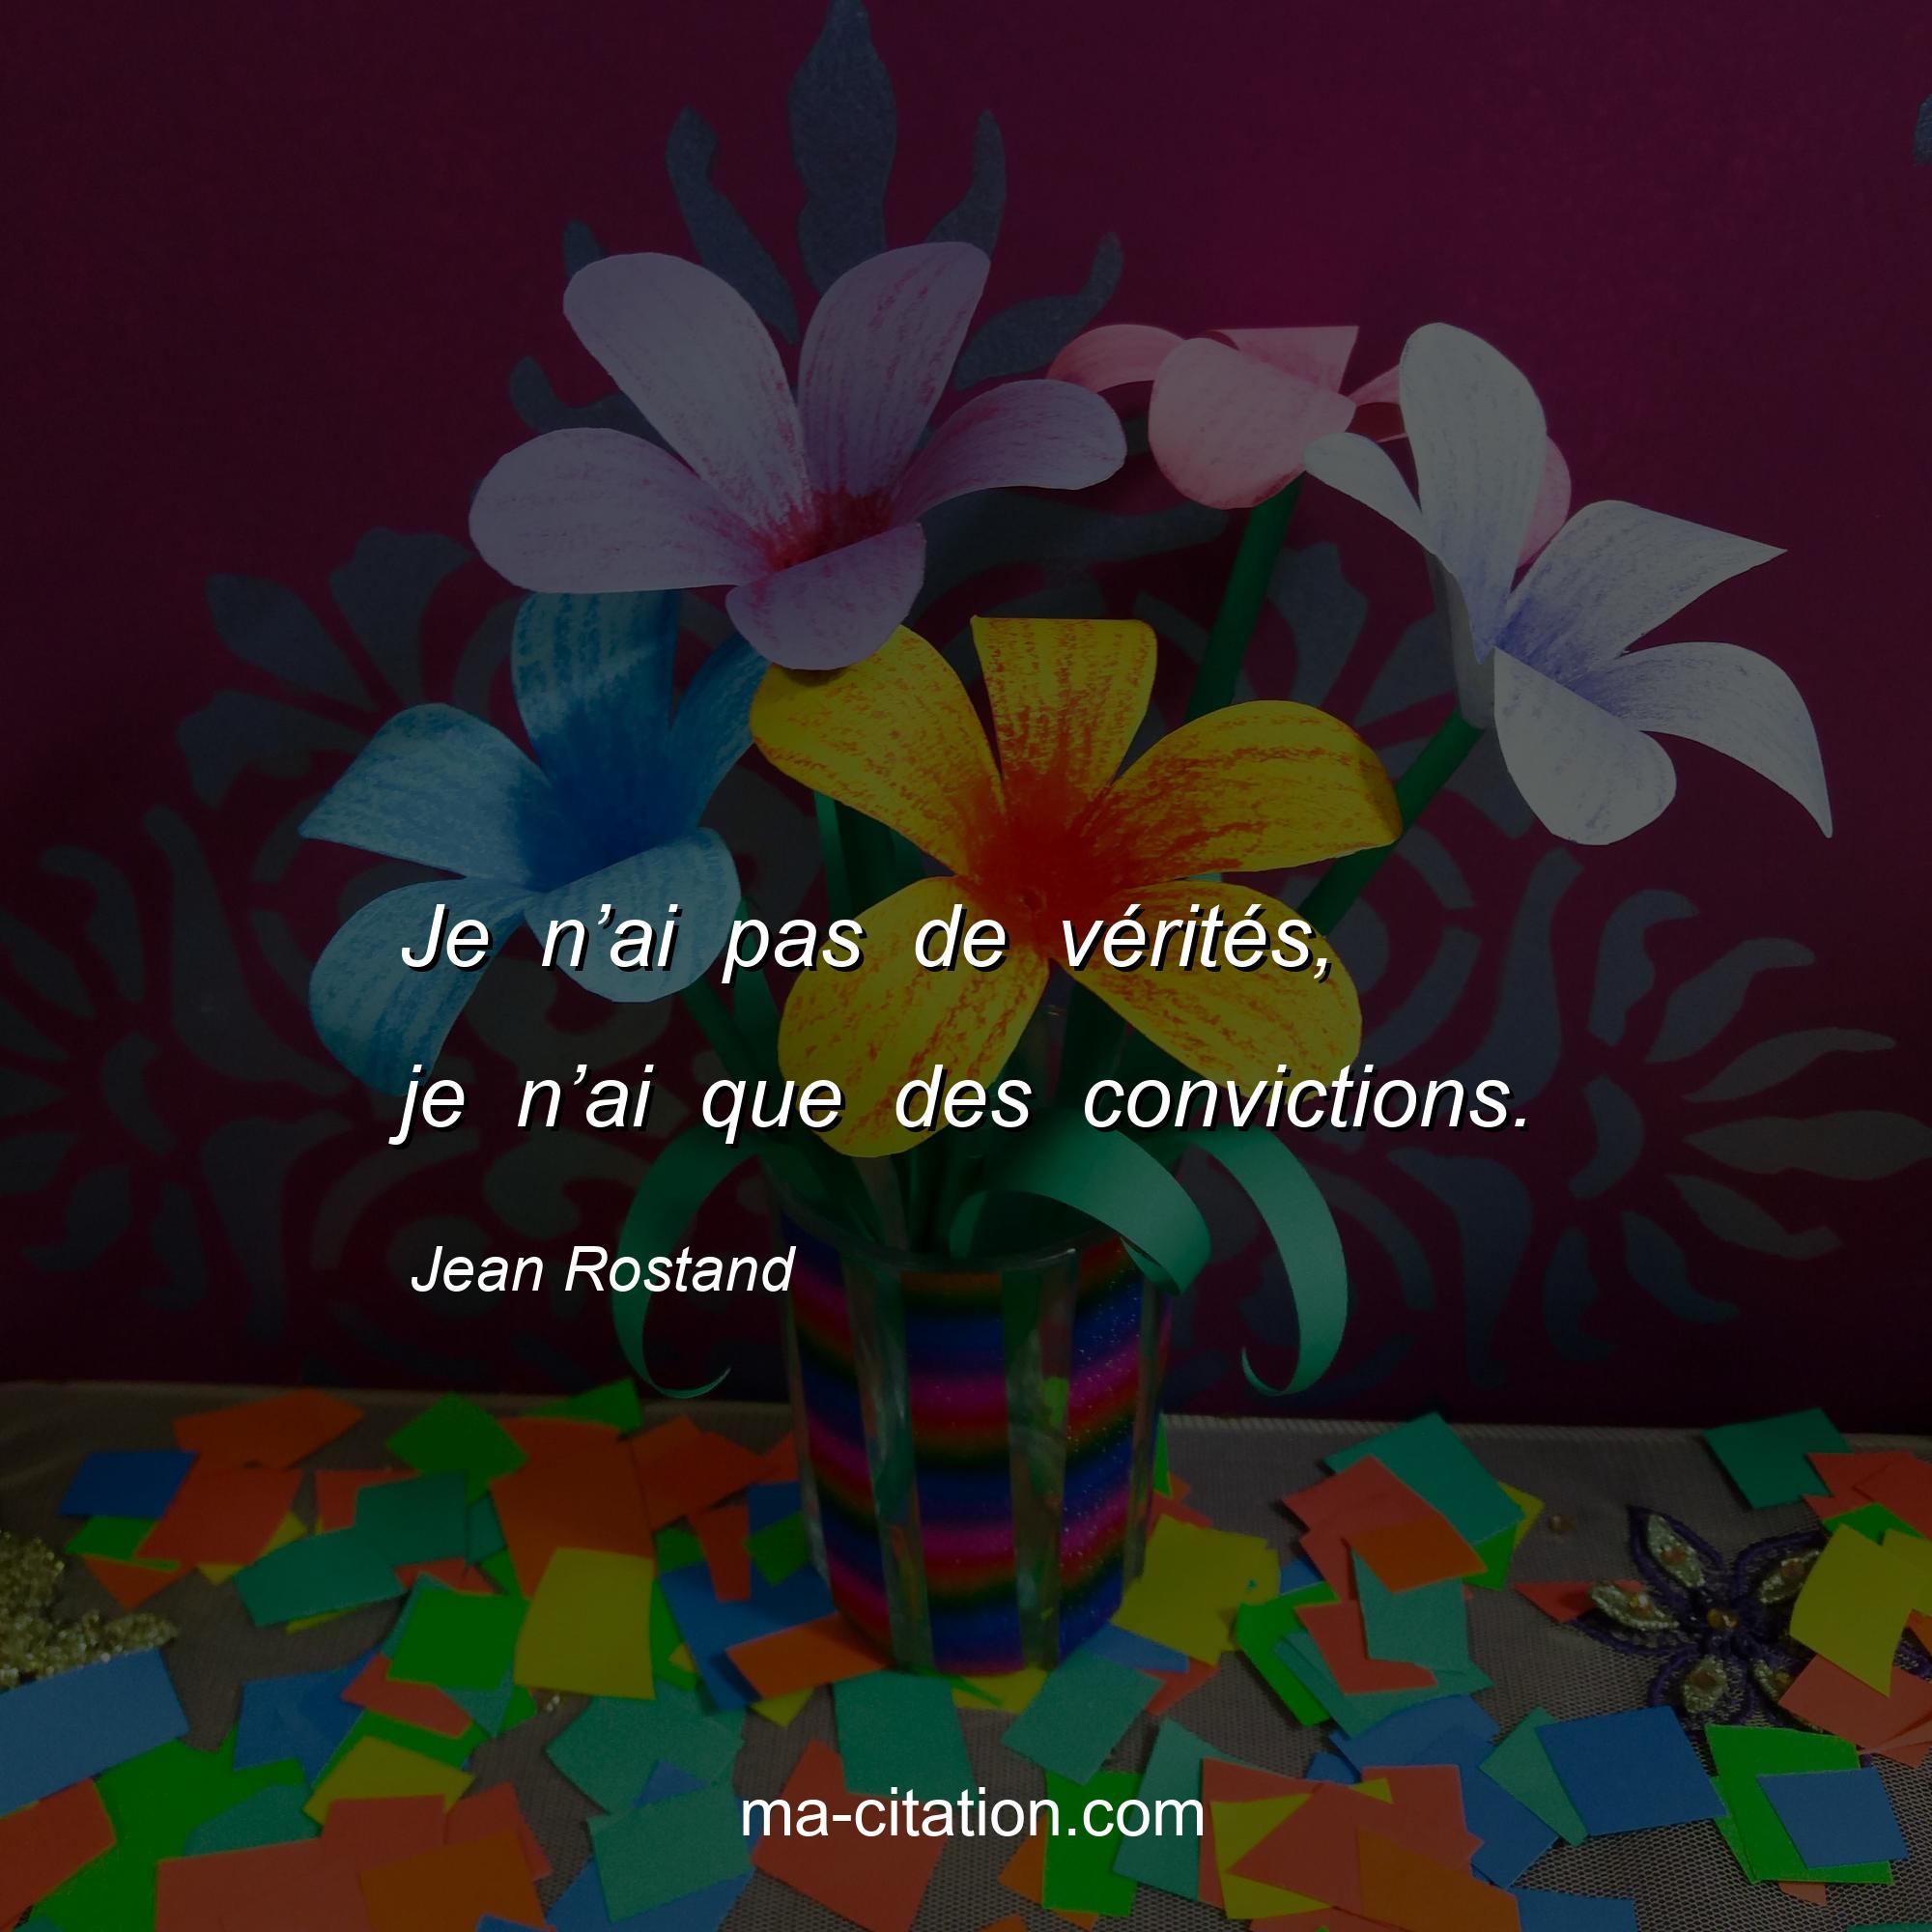 Jean Rostand : Je n’ai pas de vérités, je n’ai que des convictions.